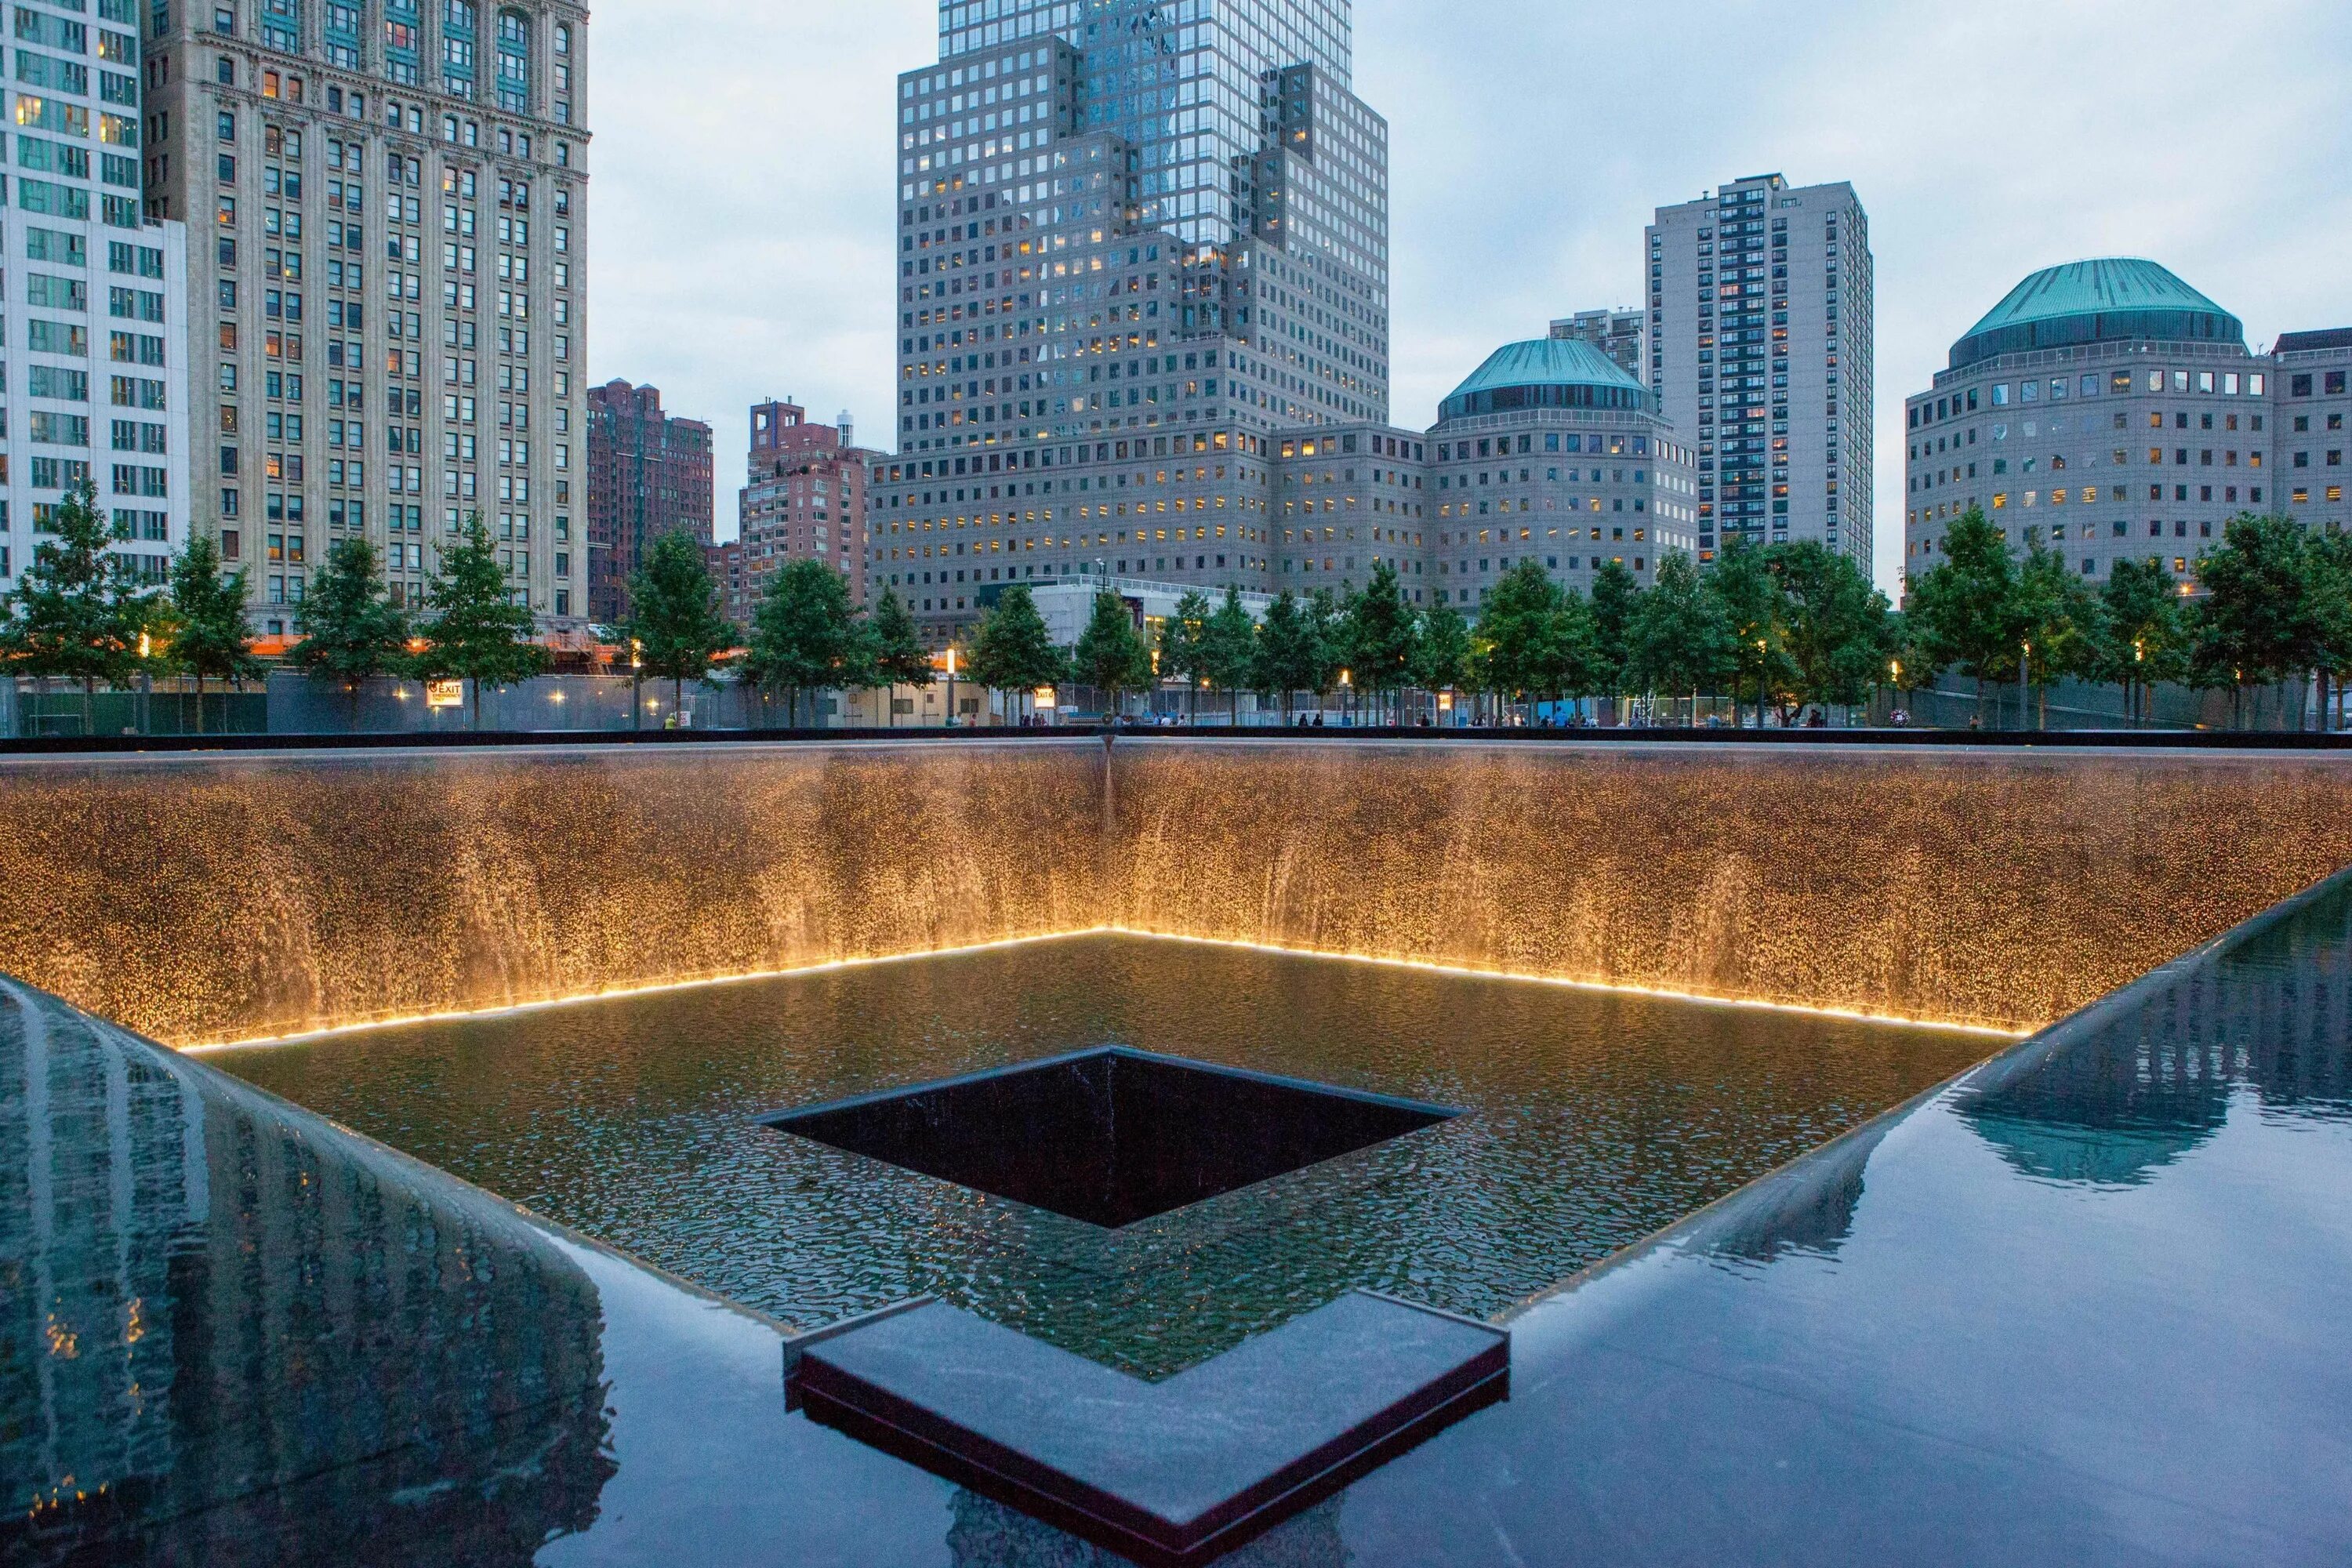 Мемориал 11 сентября в Нью-Йорке. Национальный мемориал и музей 11 сентября Нью-Йорк. Памятник 9/11 Нью-Йорк. Мемориал Граунд Зеро в Нью-Йорке.